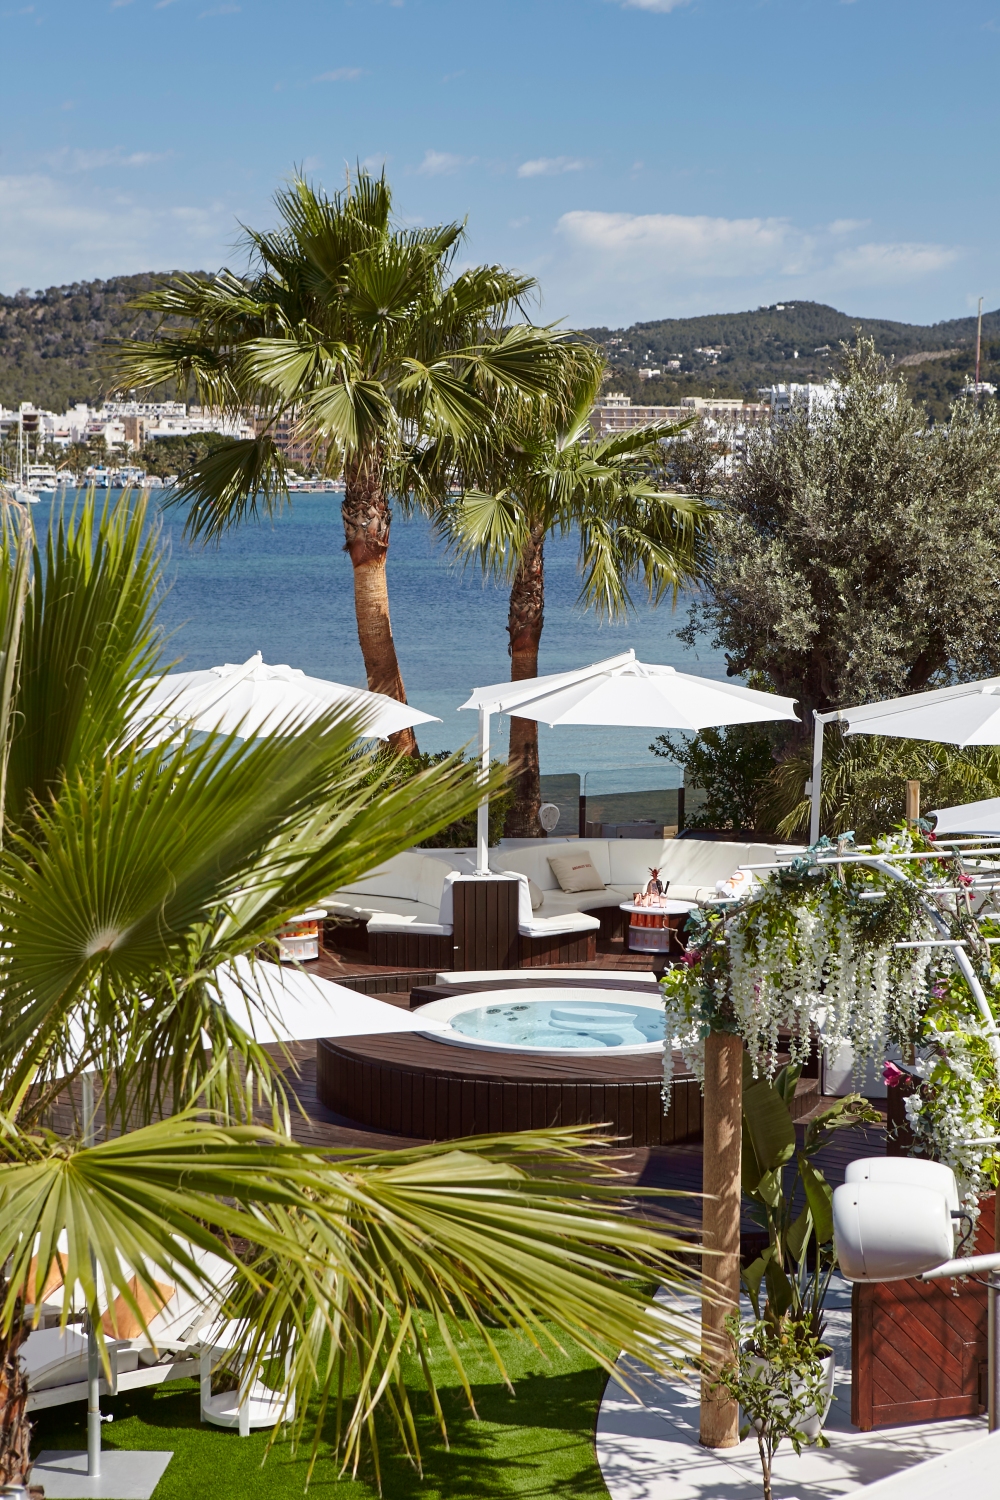 Ibiza The Mediterranean Party Paradise Chronic Silk